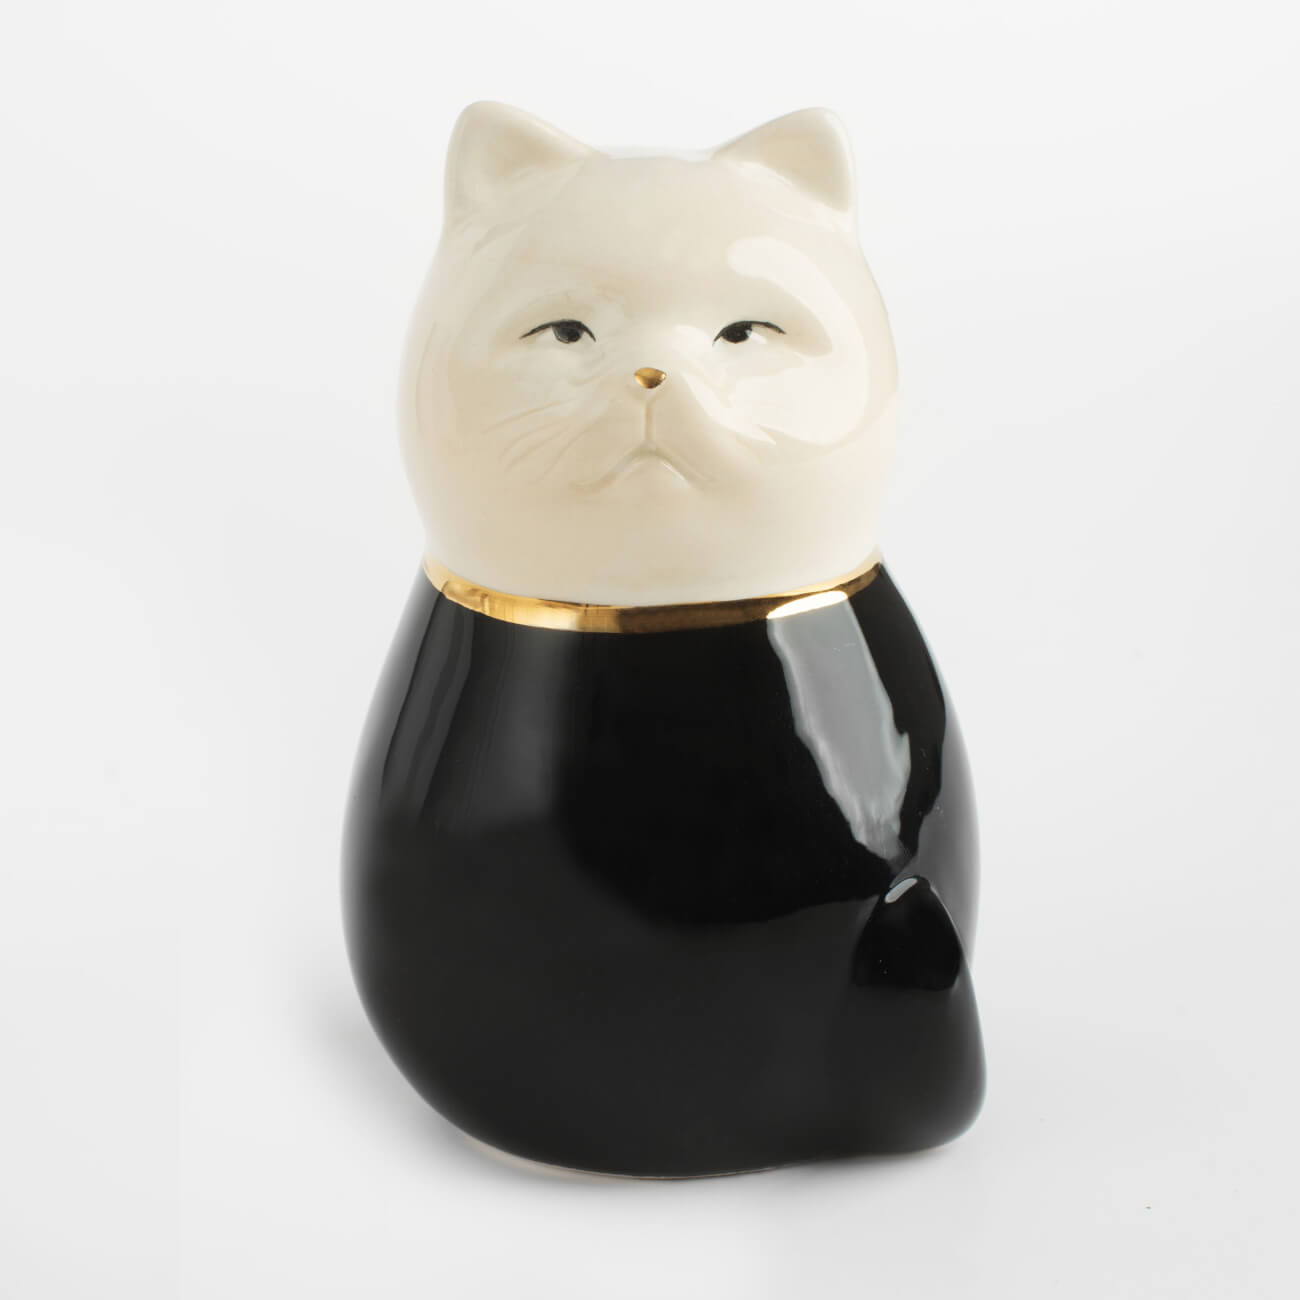 Figurine, 11 cm, ceramic, black and white, Cat, B&amp;W изображение № 1